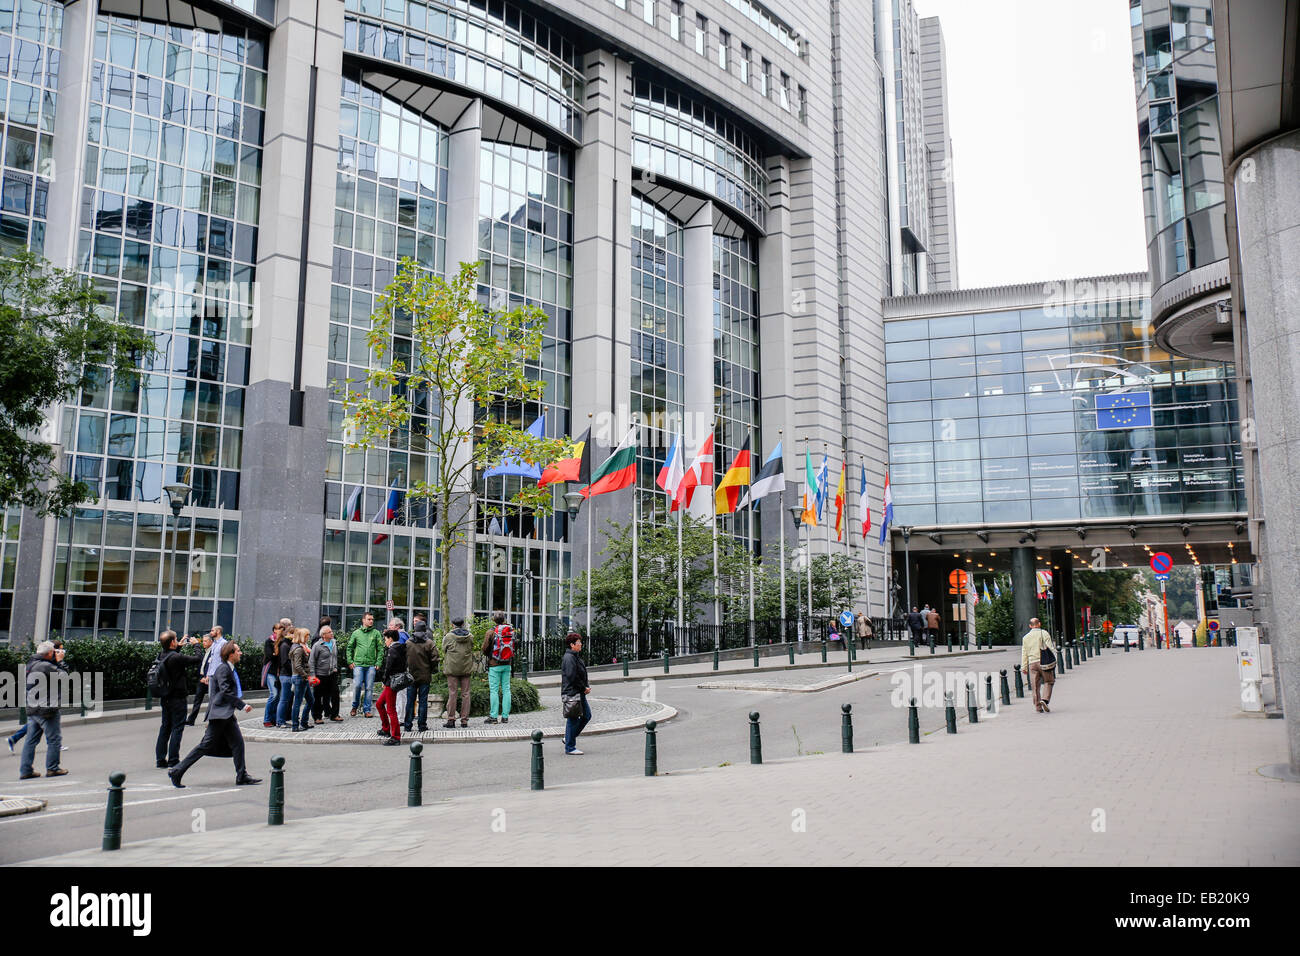 Siège de l'Union européenne l'UE Bruxelles Belgique Banque D'Images